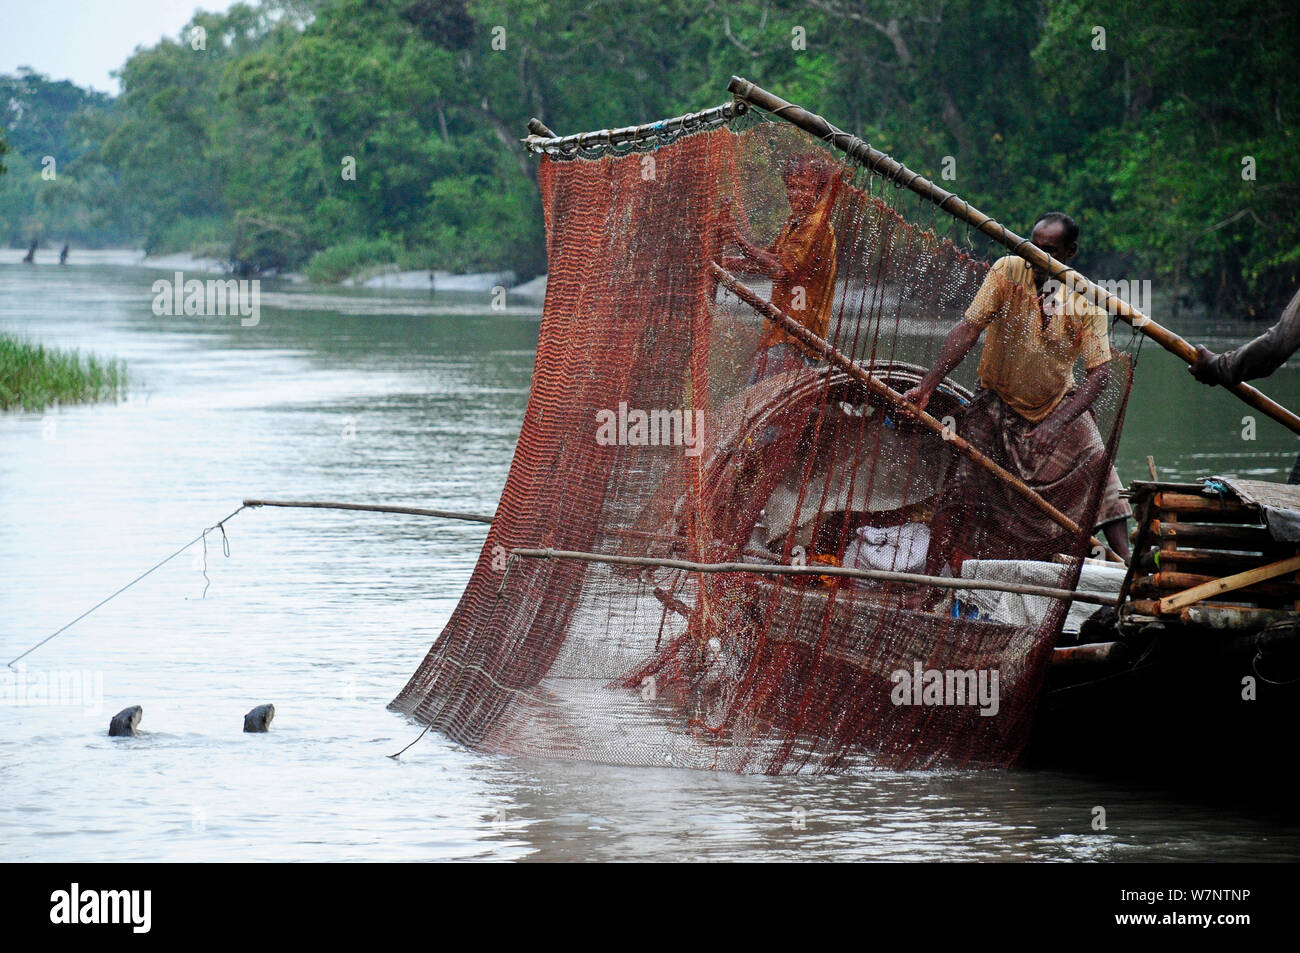 Fischotter (Lutra perspicillata in traditionellen Fangmethoden verwendet). Die Sundarbans Nationalpark, dem größten Mangrove in der Welt. Bangladest, UNESCO-Weltkulturerbe. Juni 2012. Stockfoto